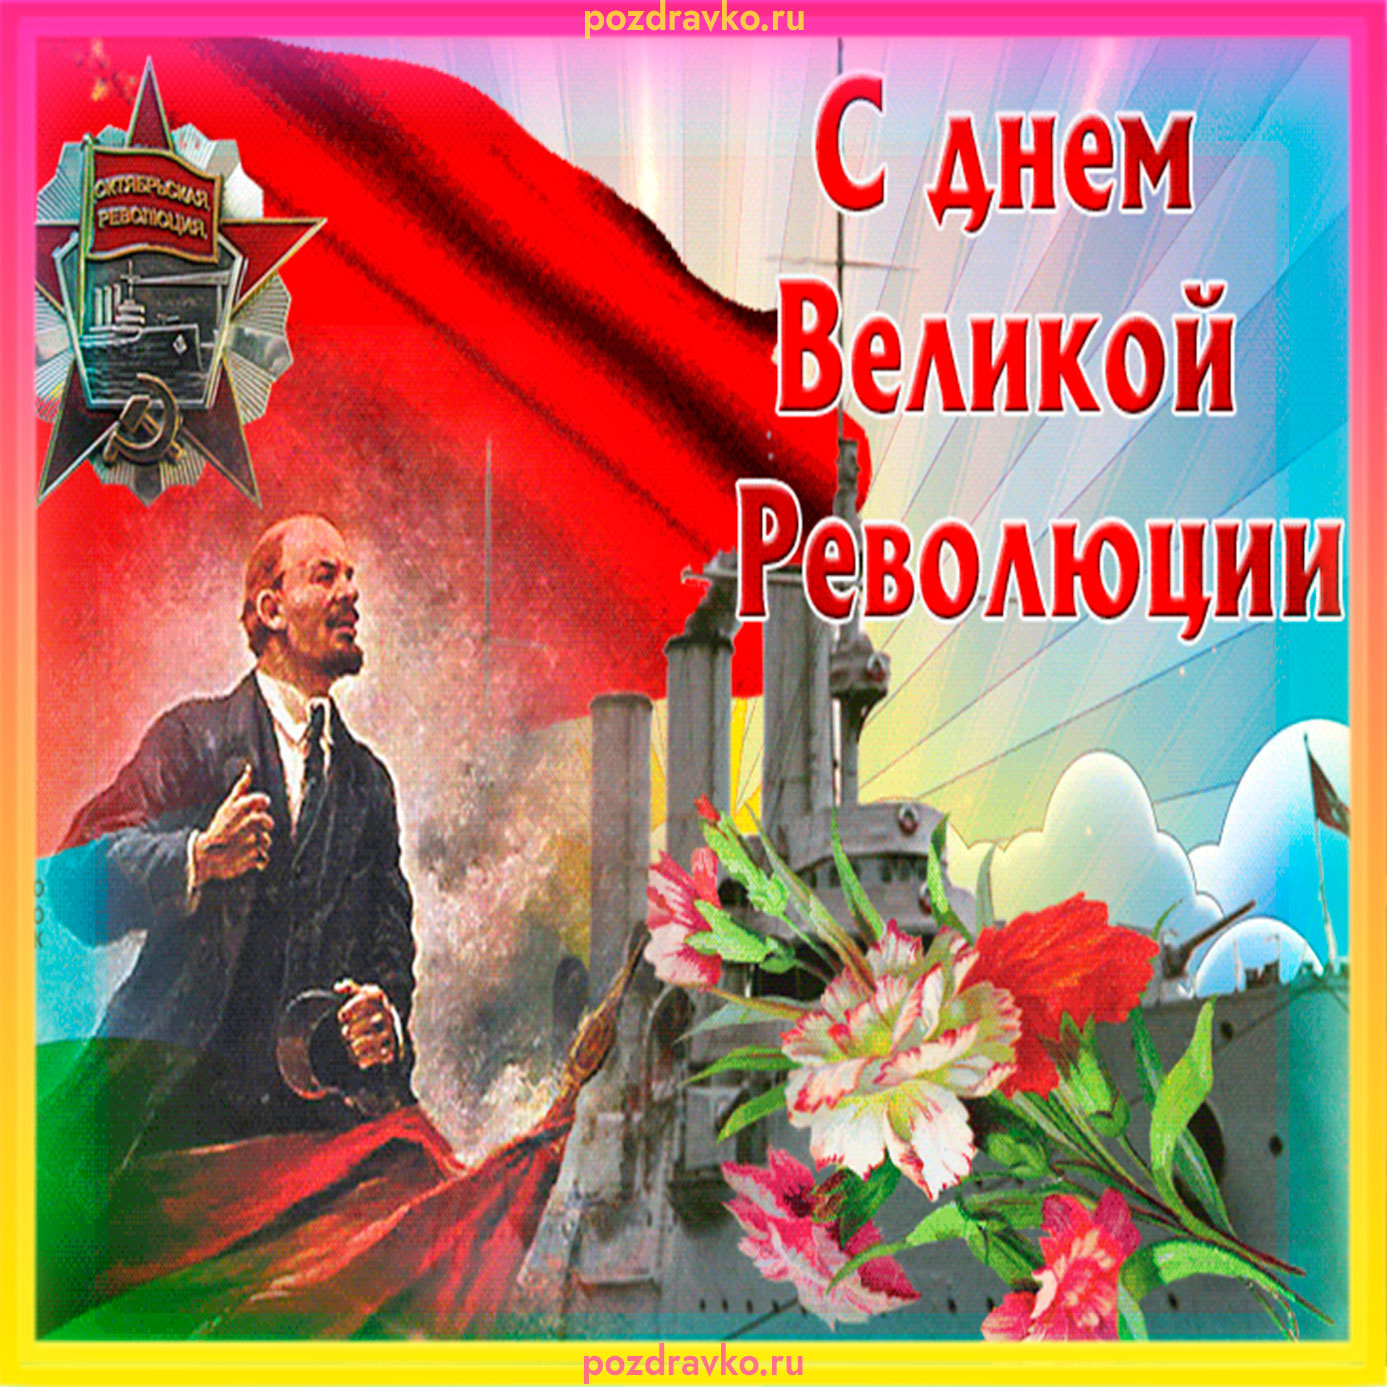 С праздником революции открытка переслать бесплатно